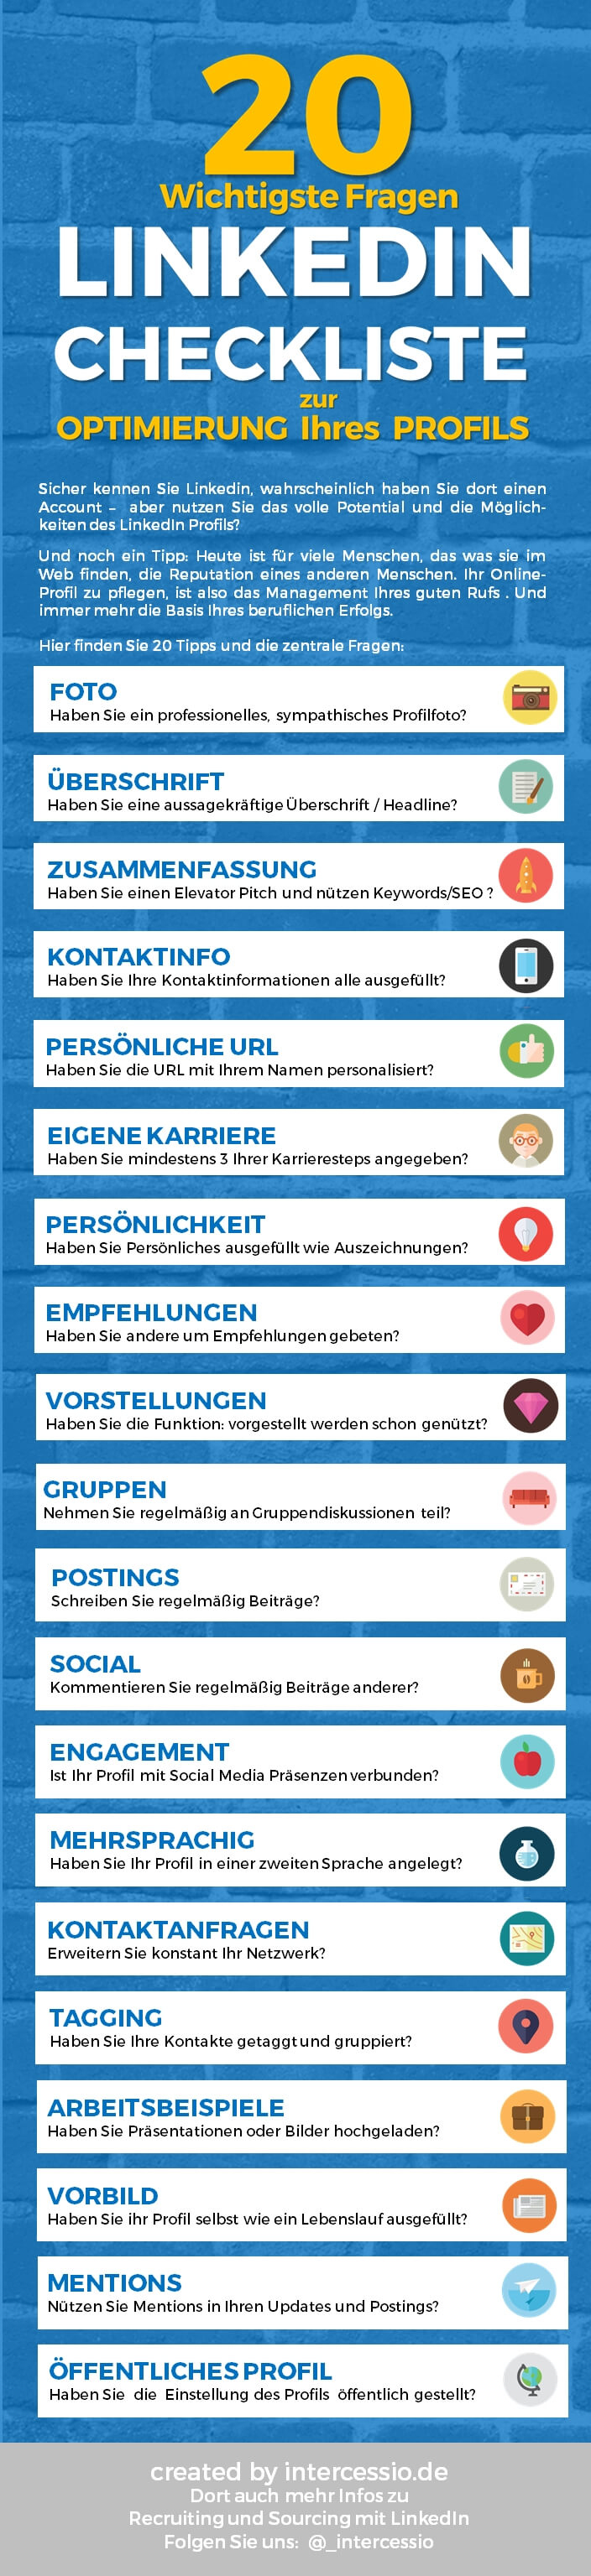 Linkedin Profil Optimierung Checkliste und Infographic by Intercessio 2015